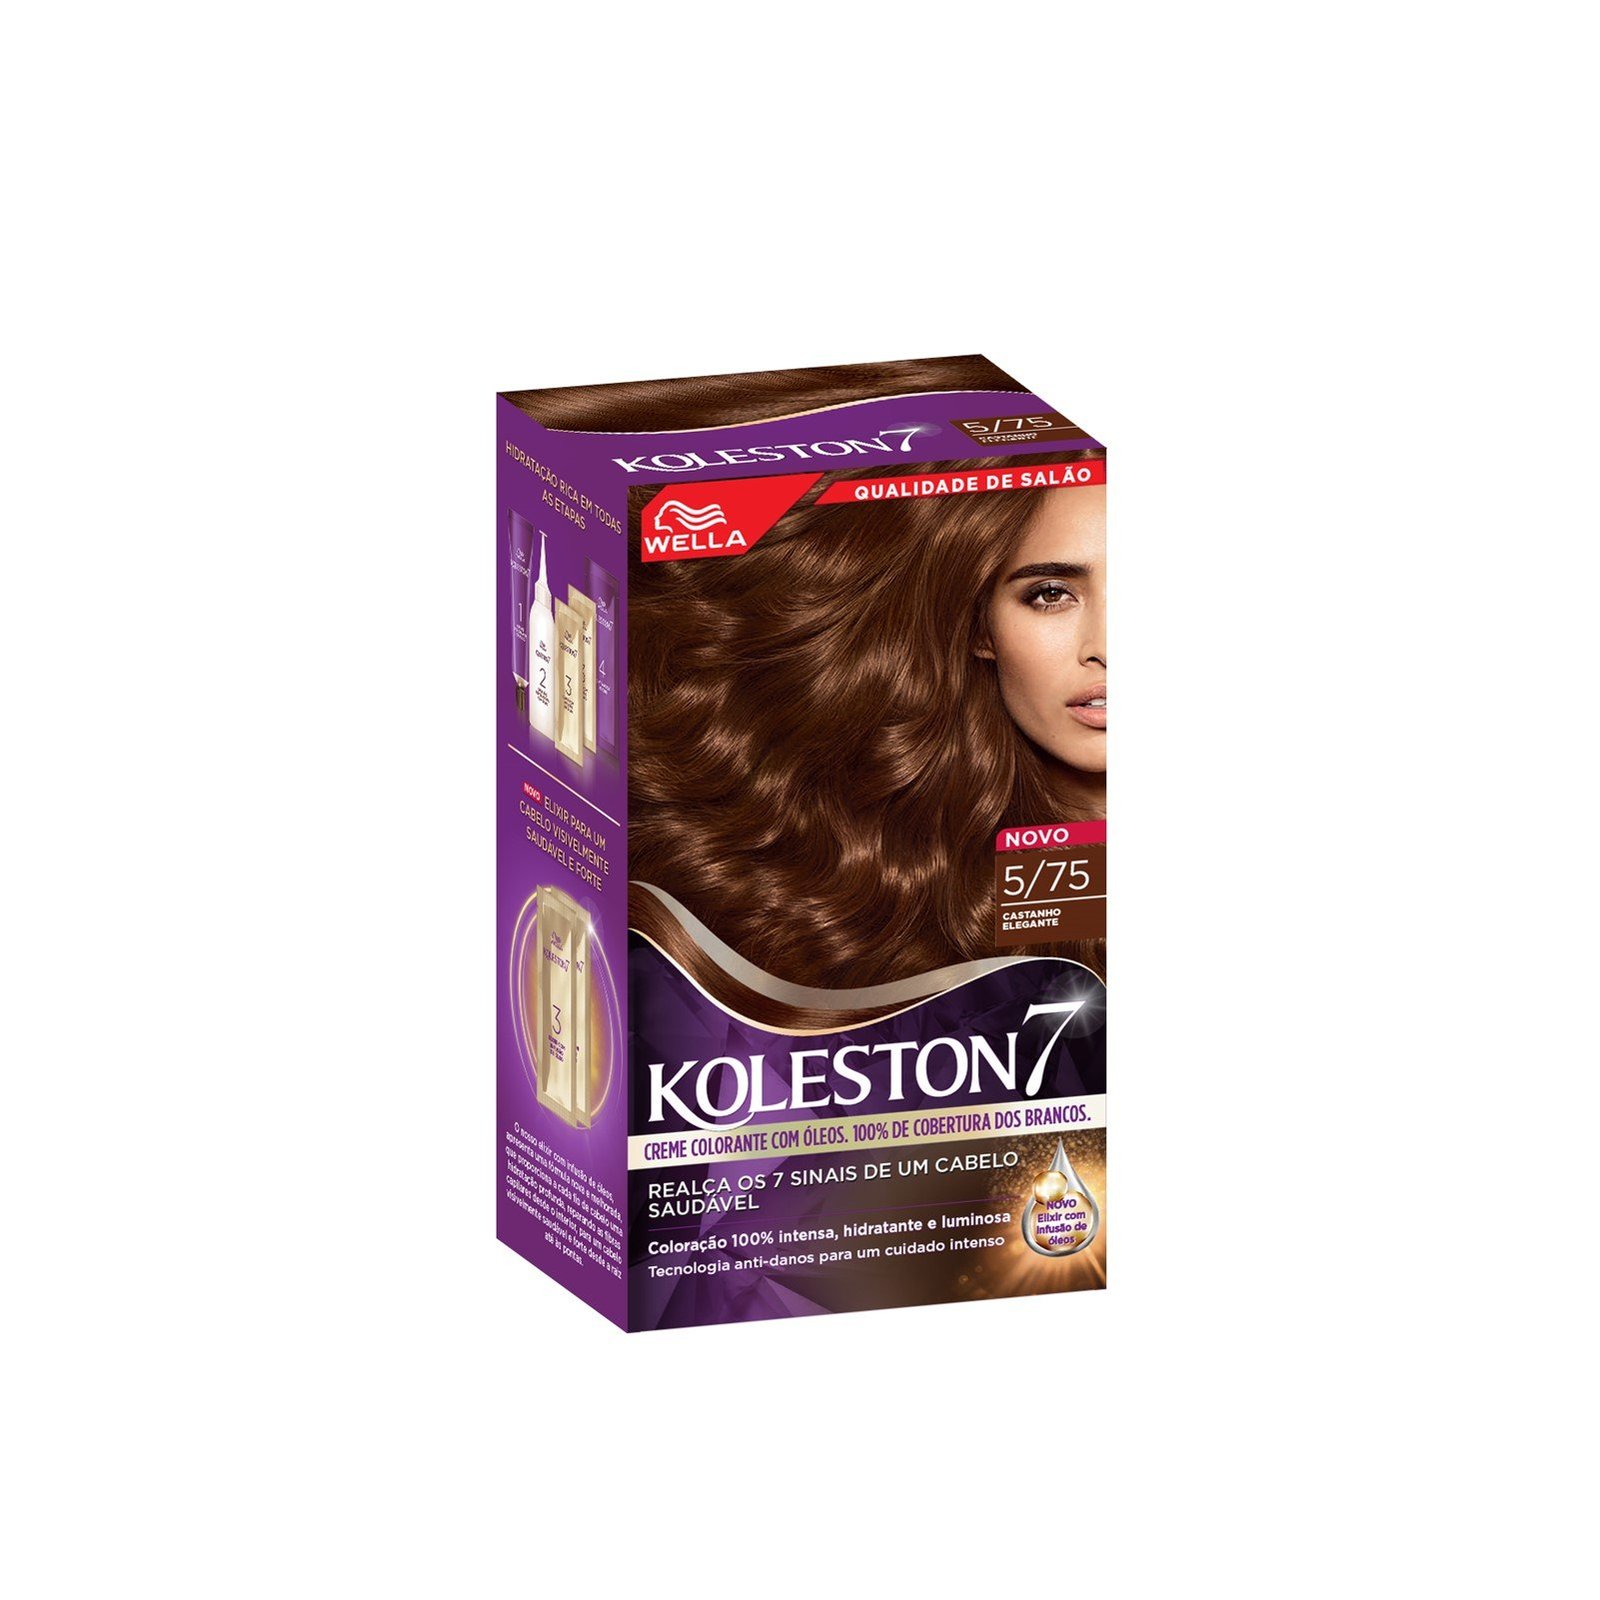 Wella Koleston 7 5/75 Elegant Brown Permanent Hair Color